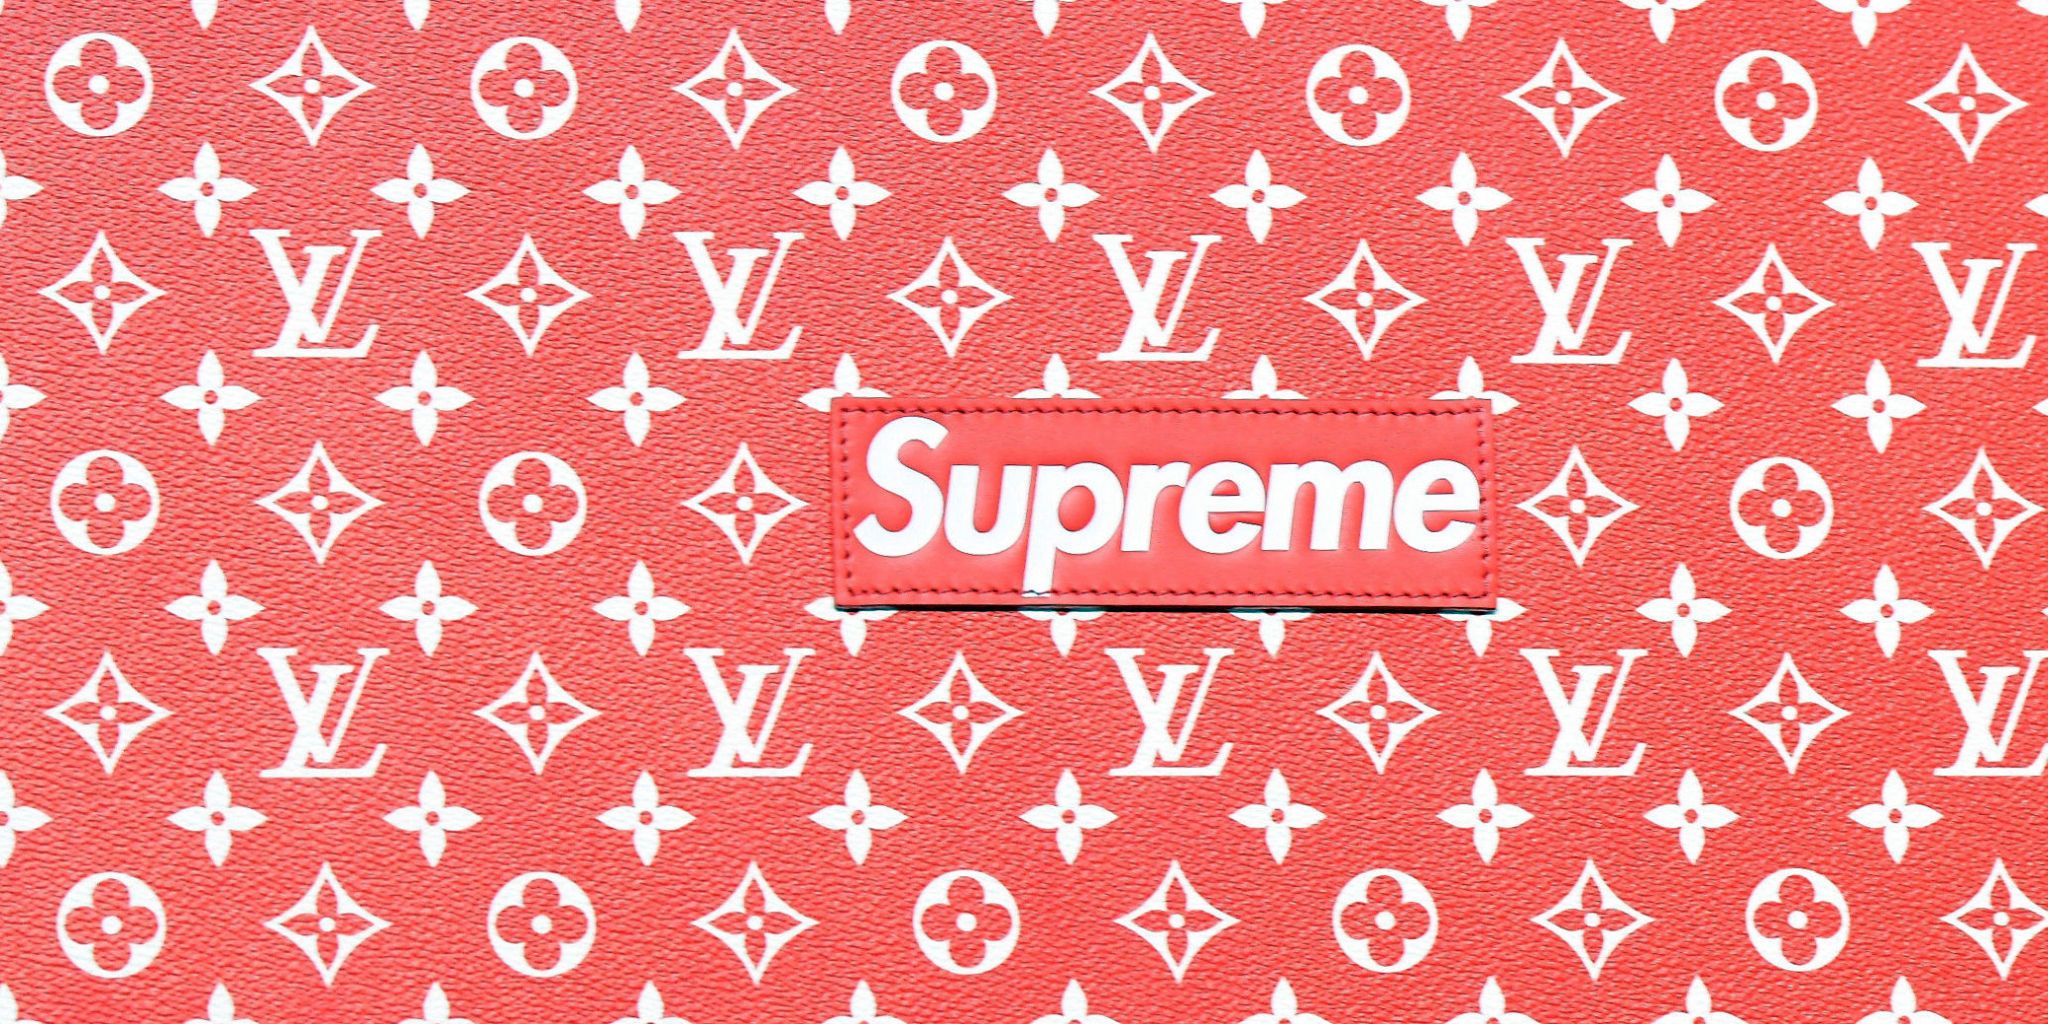 Supreme Louis Vuitton Wallpapers  Top Những Hình Ảnh Đẹp